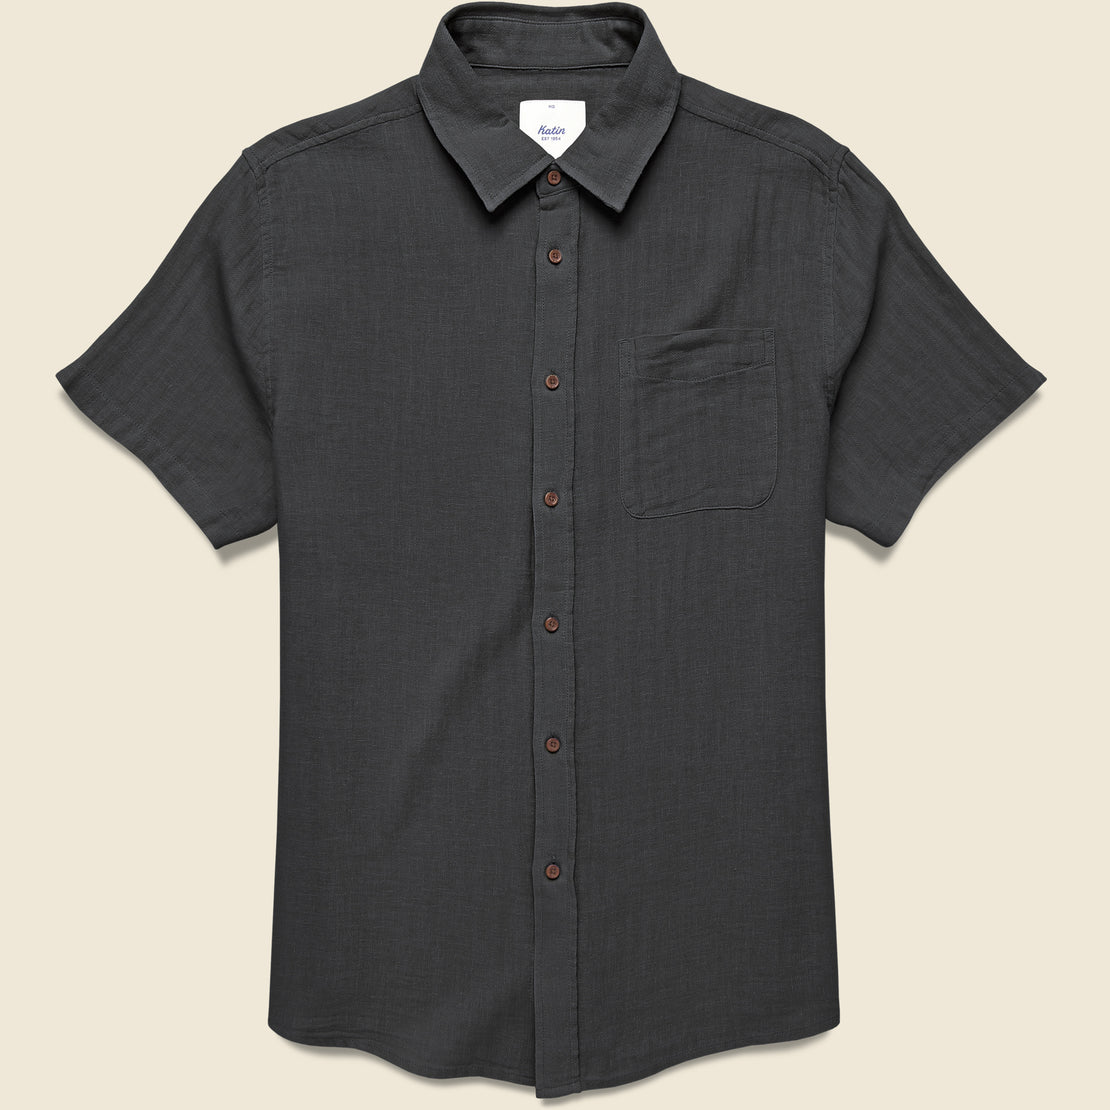 Katin Alan Solid Shirt - Black Wash